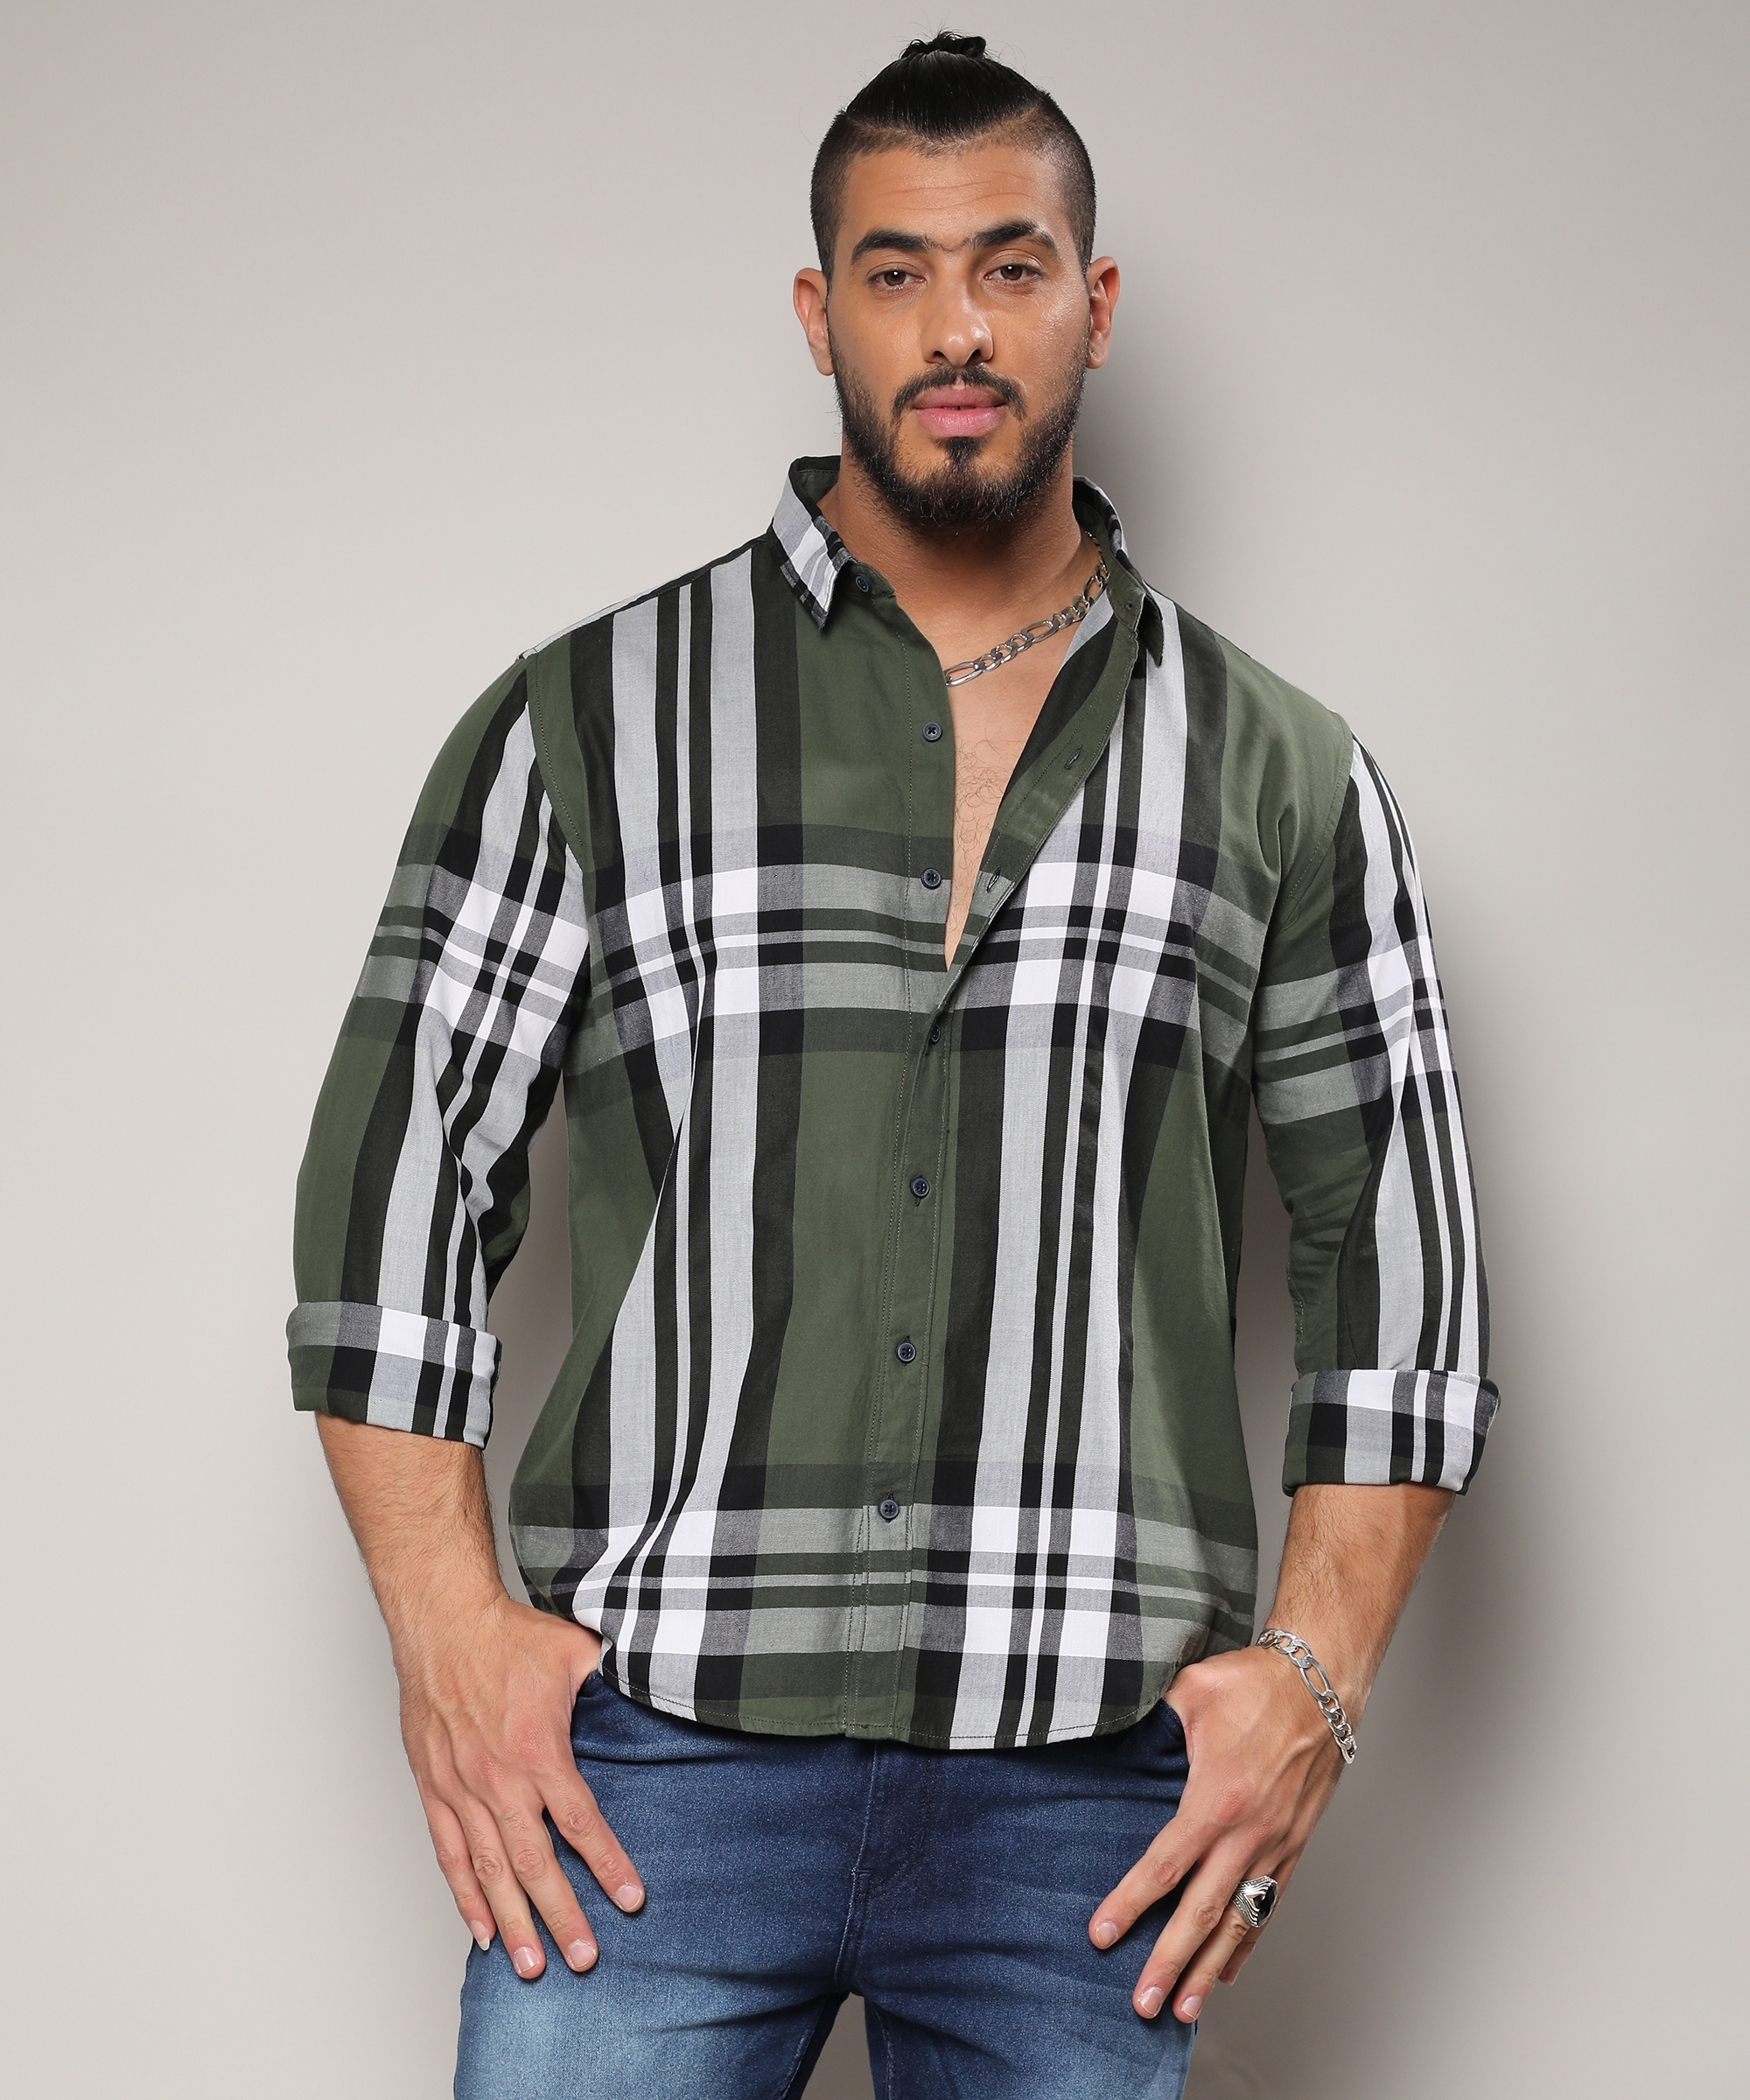 Instafab Plus | Men's Dark Green Tartan Plaid Shirt